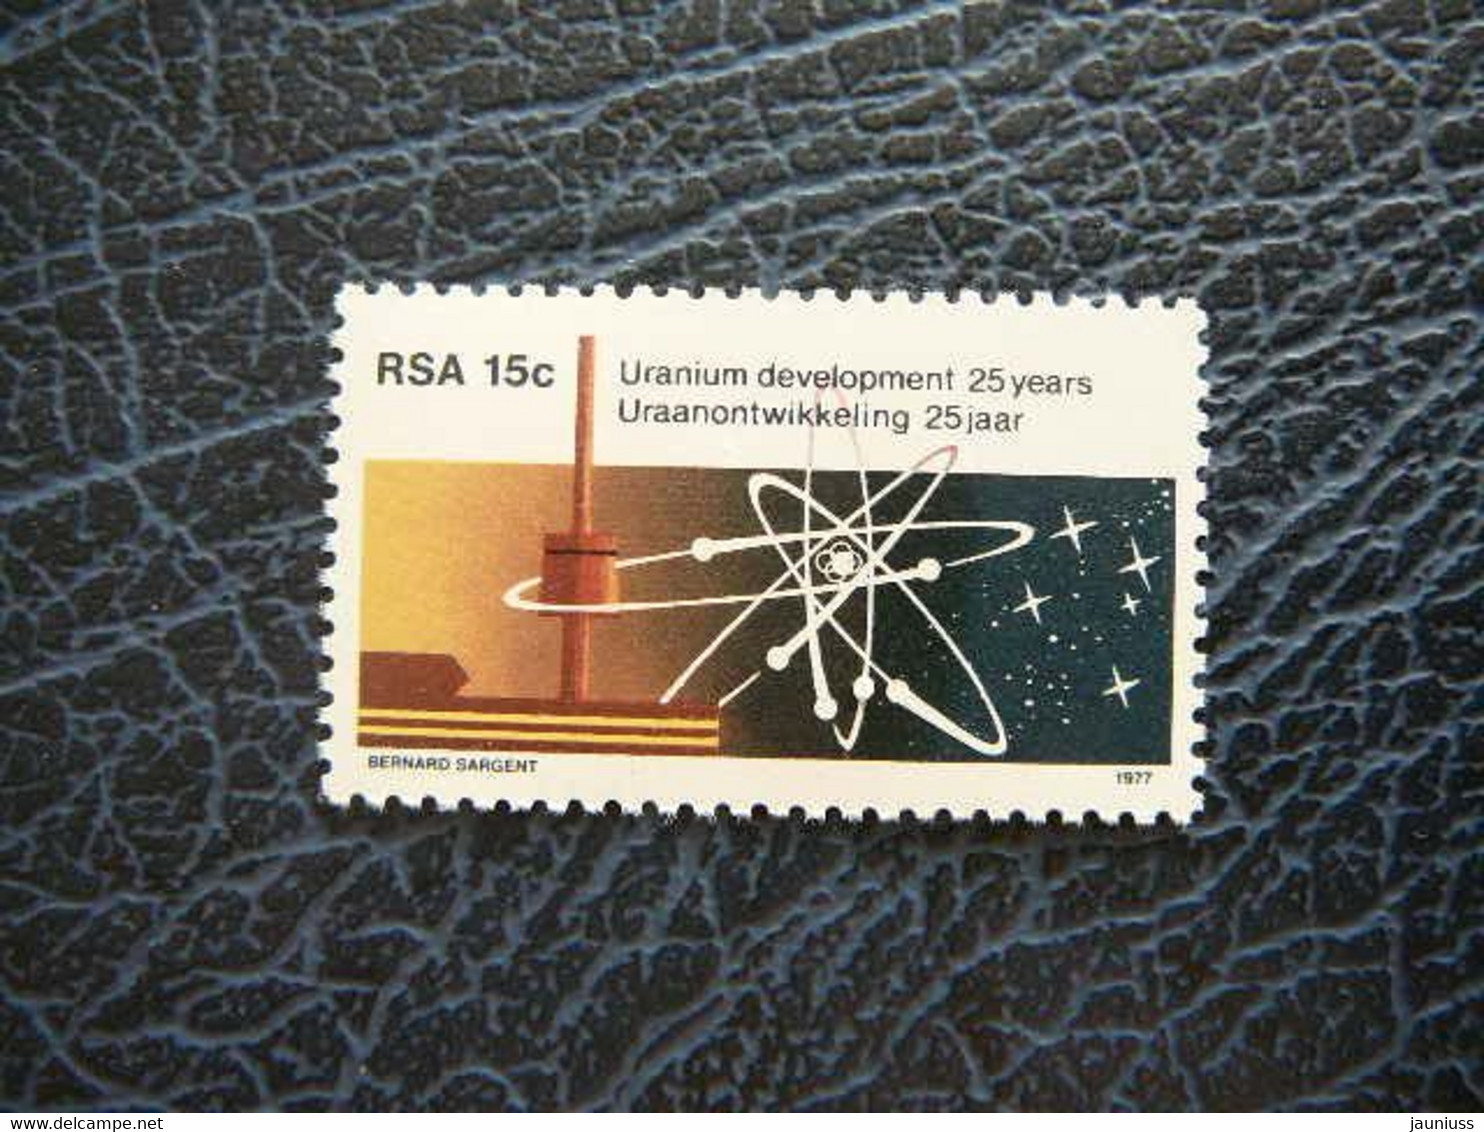 Uranium Development # South Africa RSA 1977 MNH #535 - Neufs